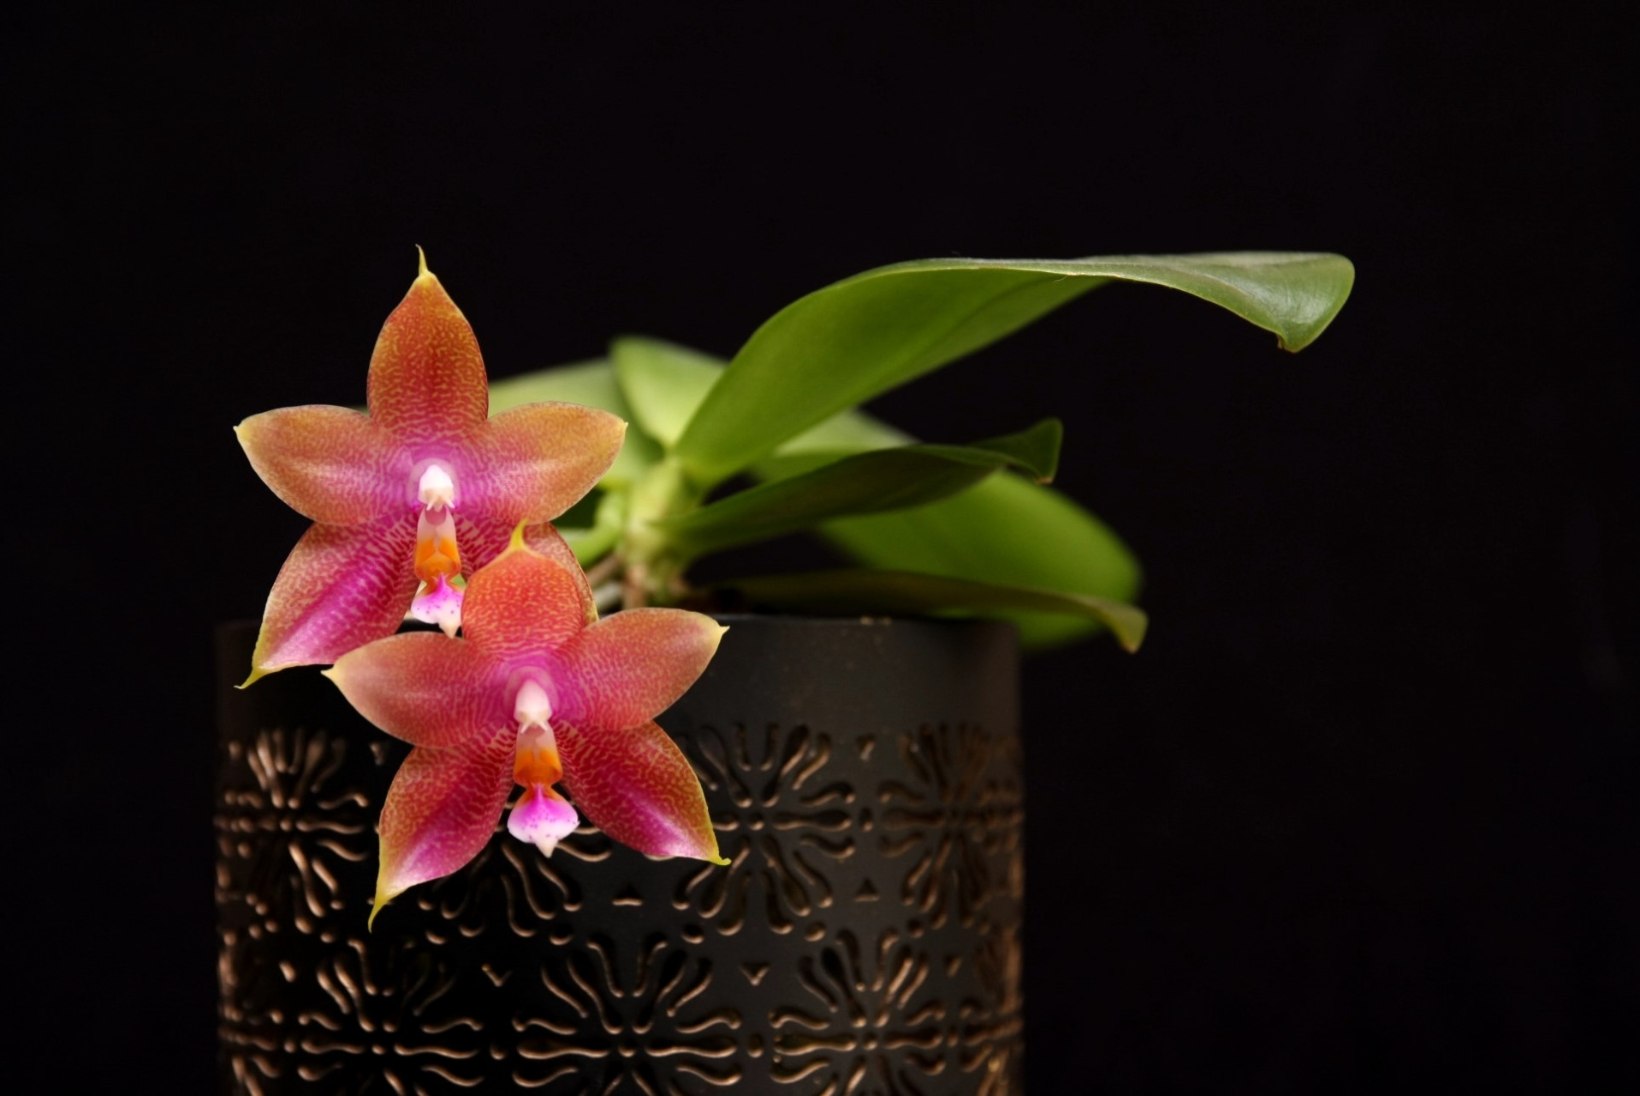 Kogenud orhideekasvataja jagab saladusi: kuidas kooselu kuukingadega sujuvaks muuta?